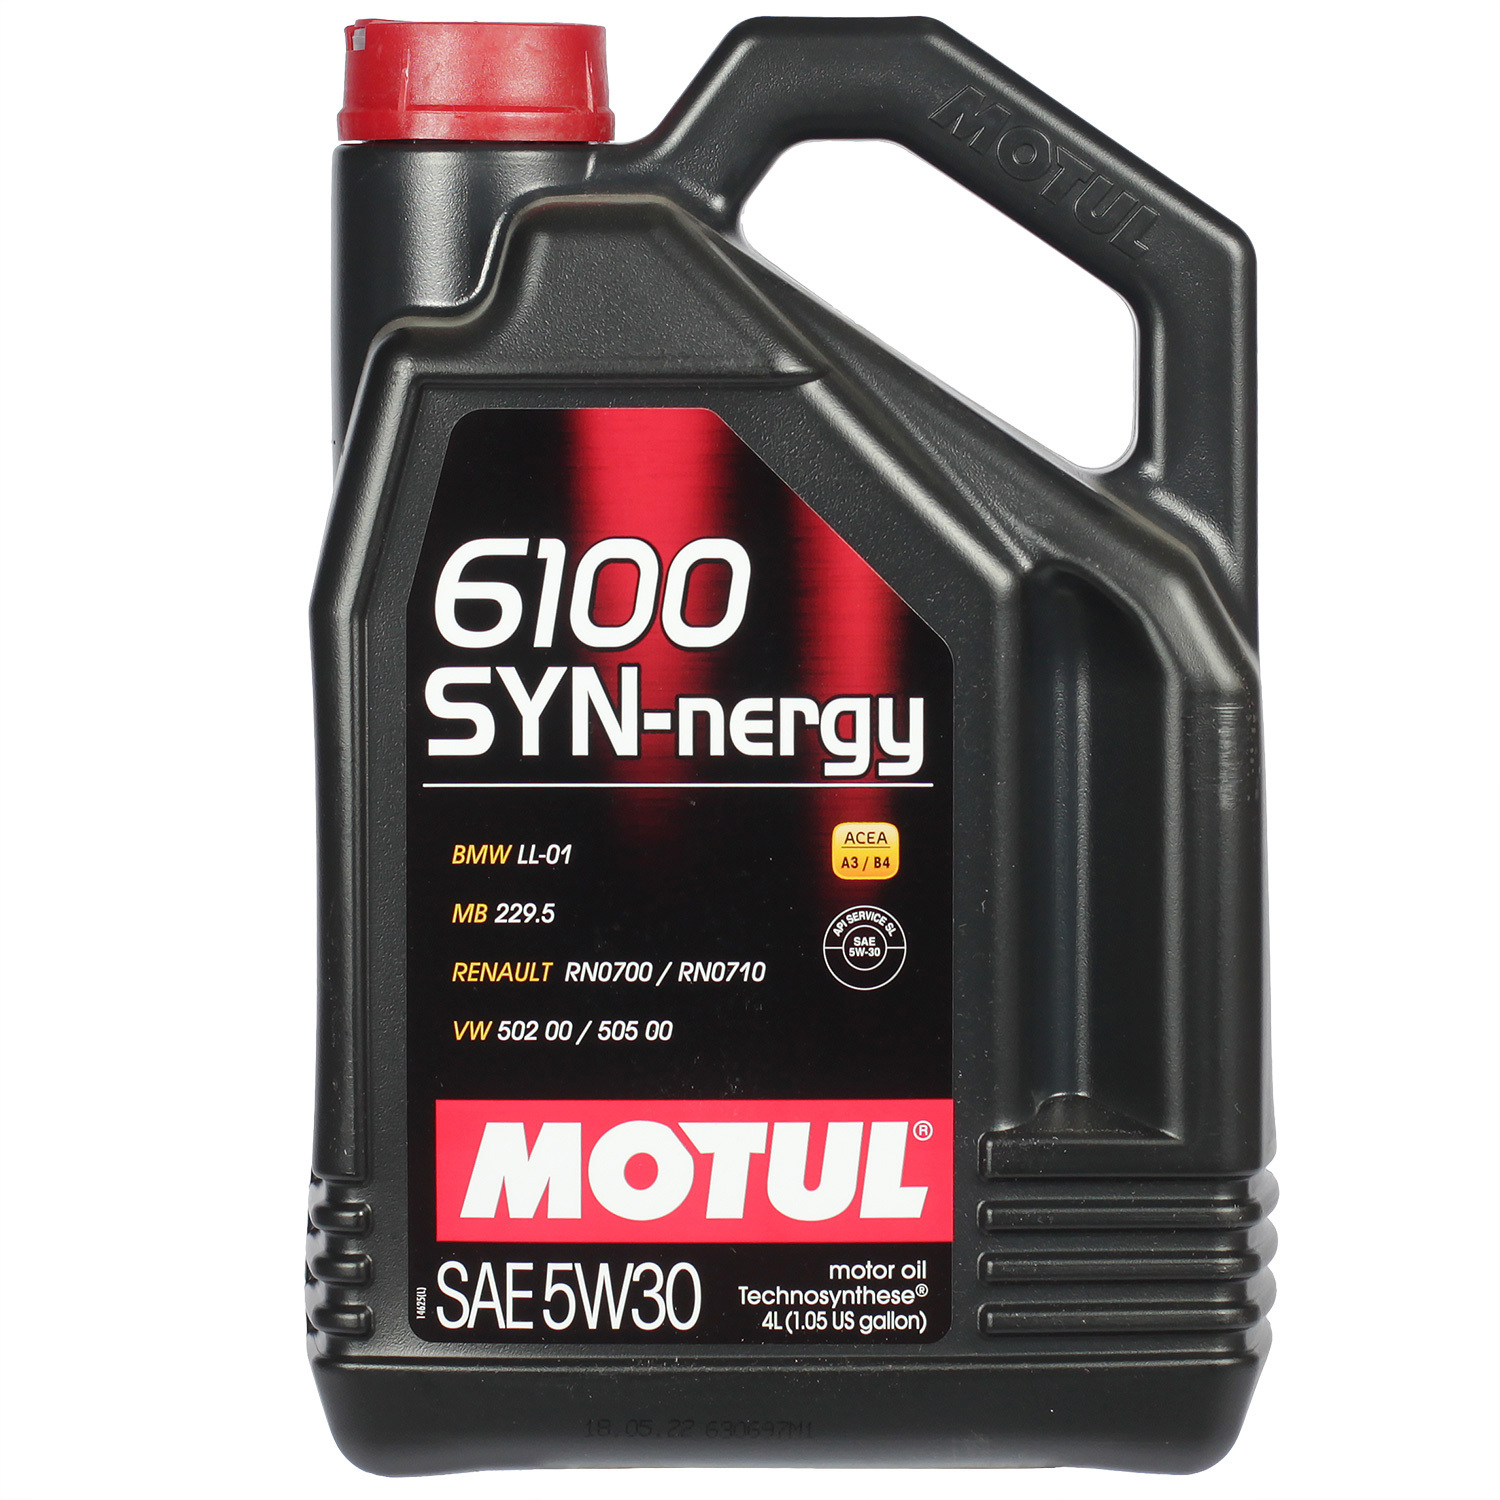 Motul Моторное масло Motul 6100 SYN-NERGY 5W-30, 4 л motul моторное масло motul 6100 syn clean 5w 30 5 л